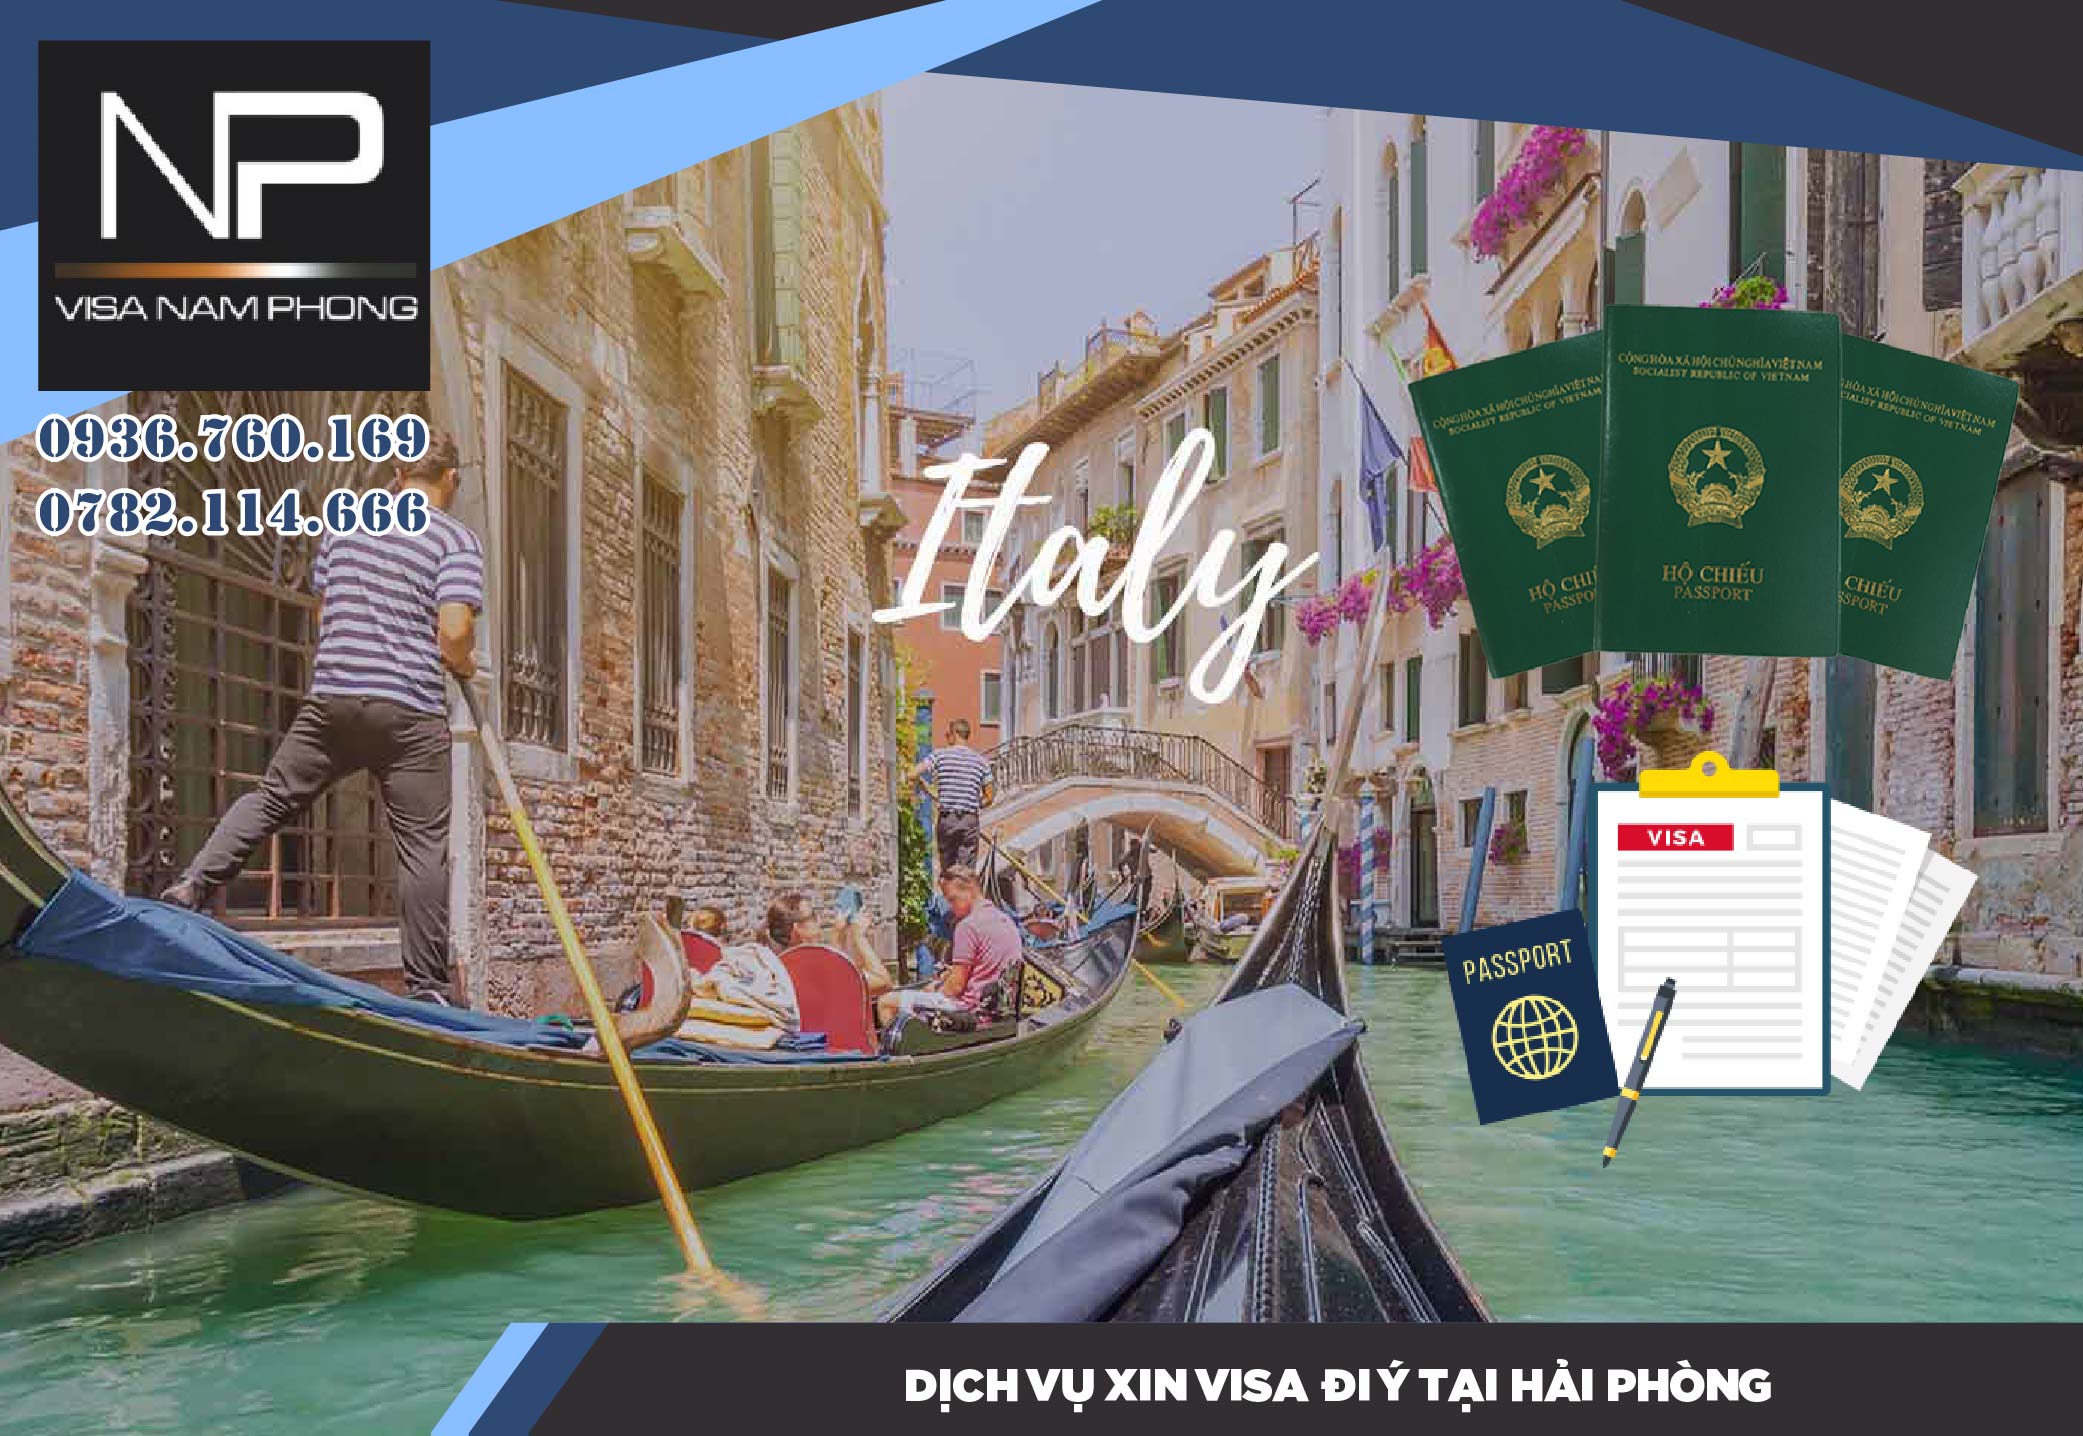 DỊch vụ xin visa đi Ý tại Hải Phòng